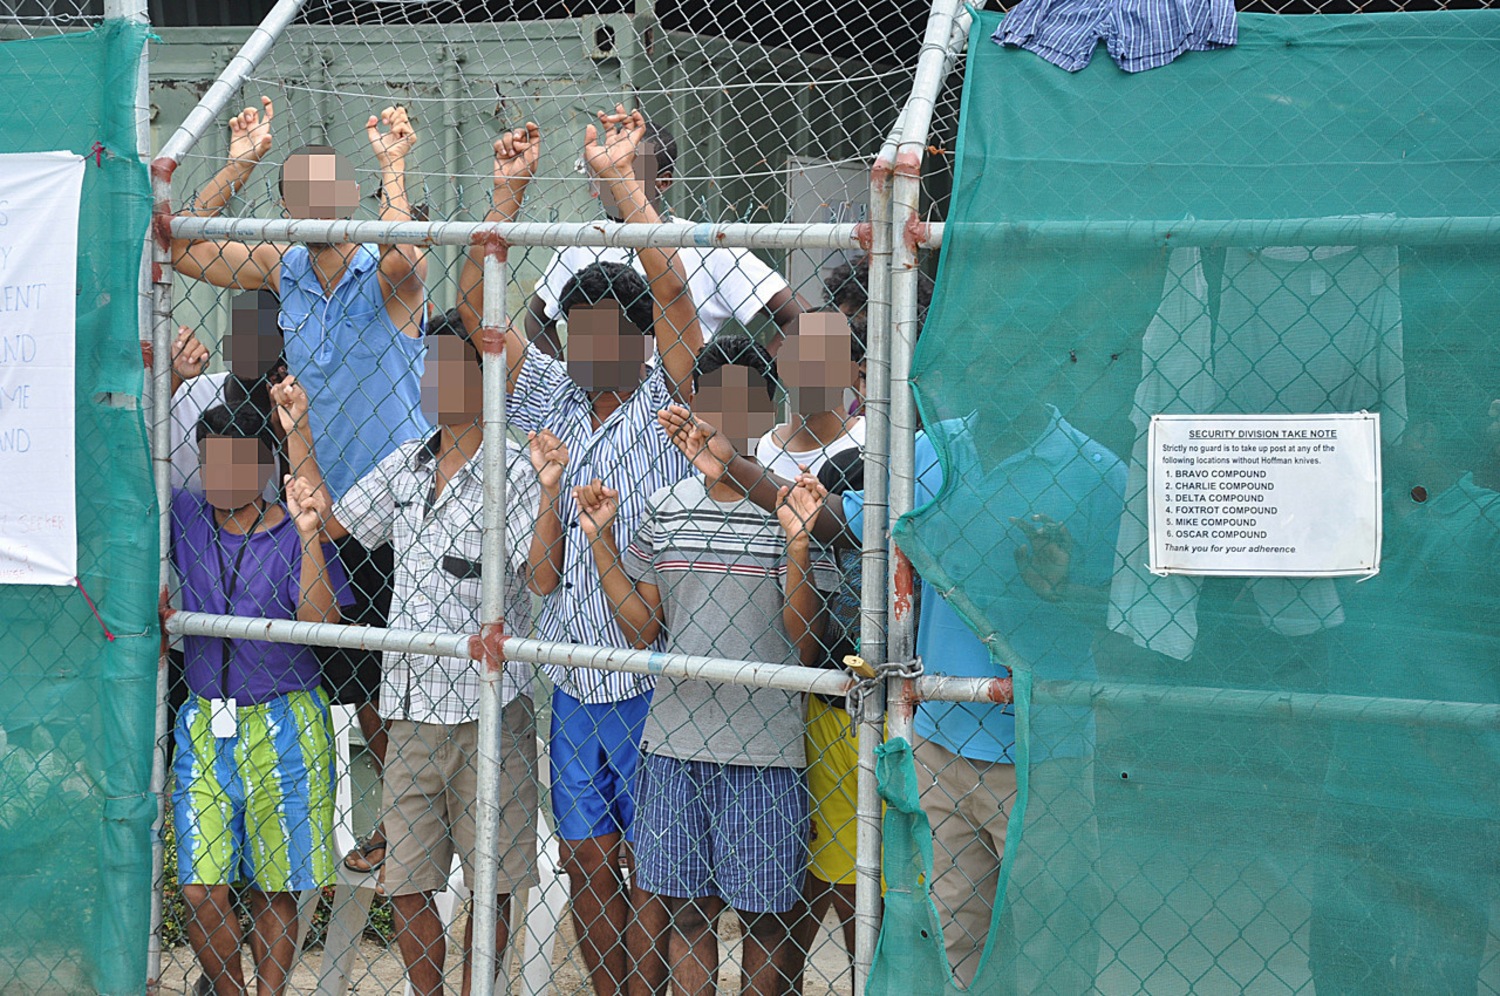 Australia Houses Migrants in 'Degrading' Detention